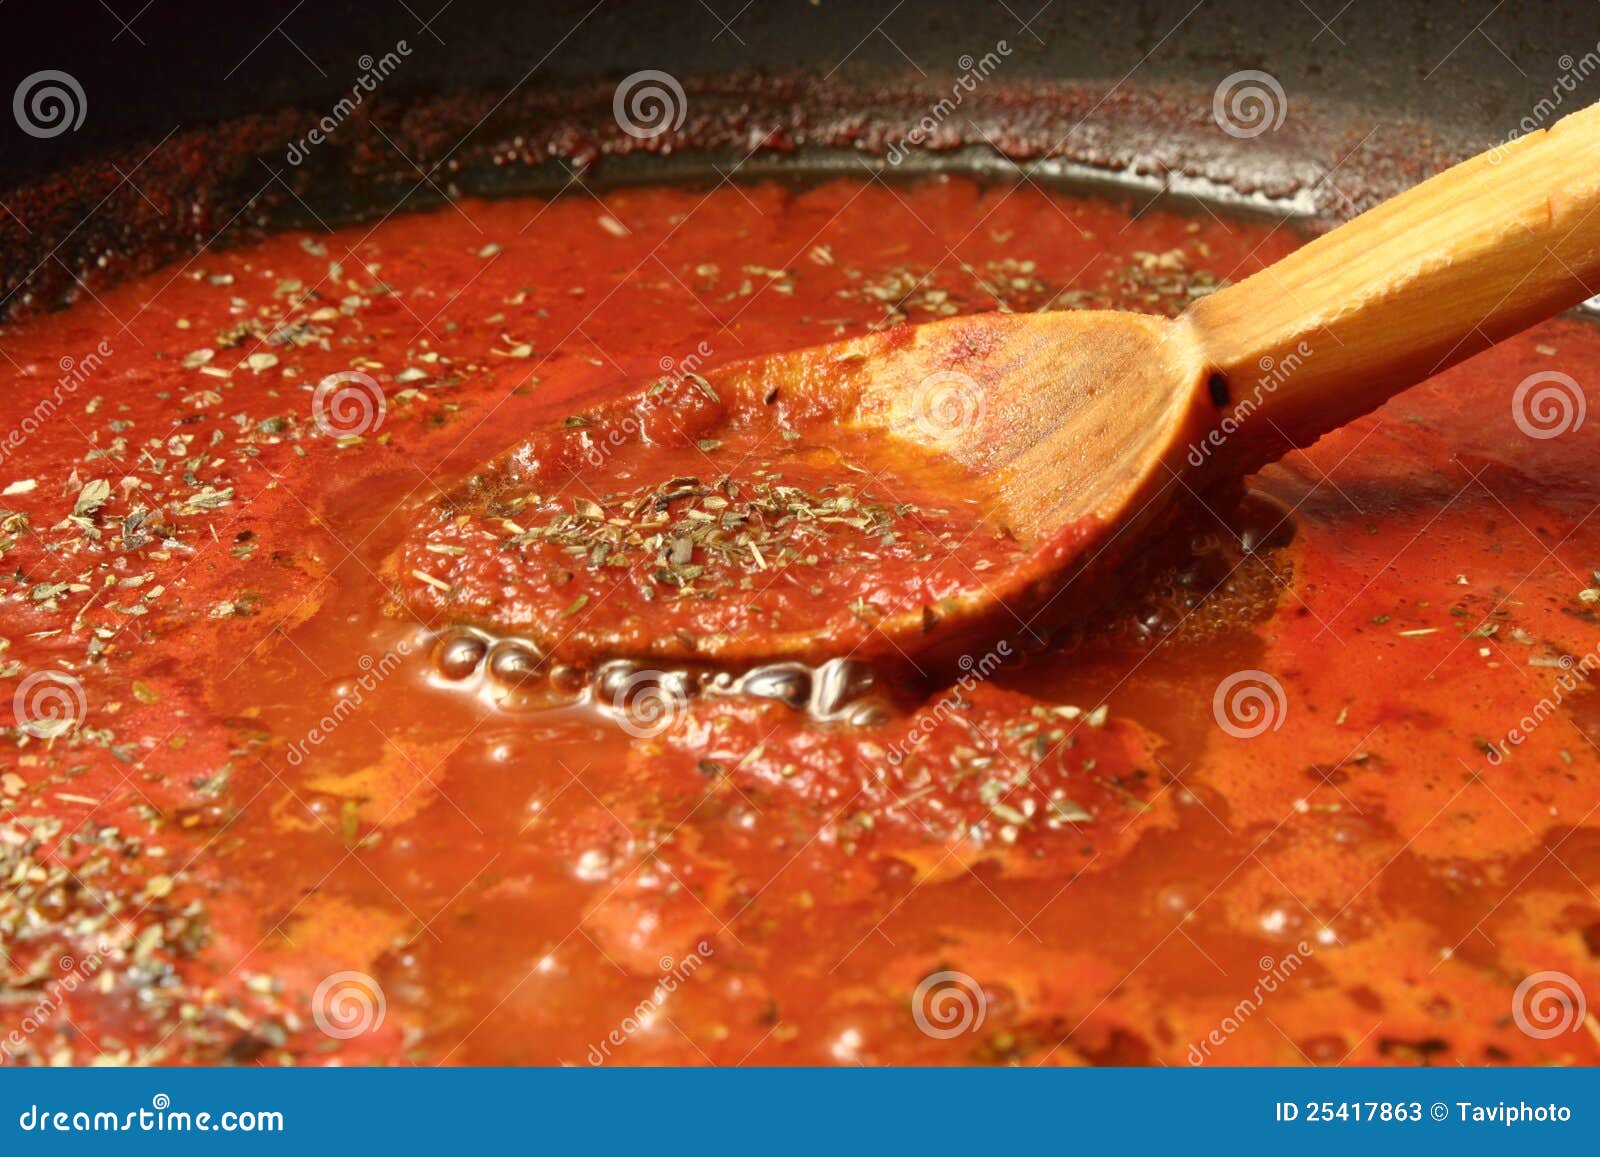 томатный соус рецепт на пиццу фото 85